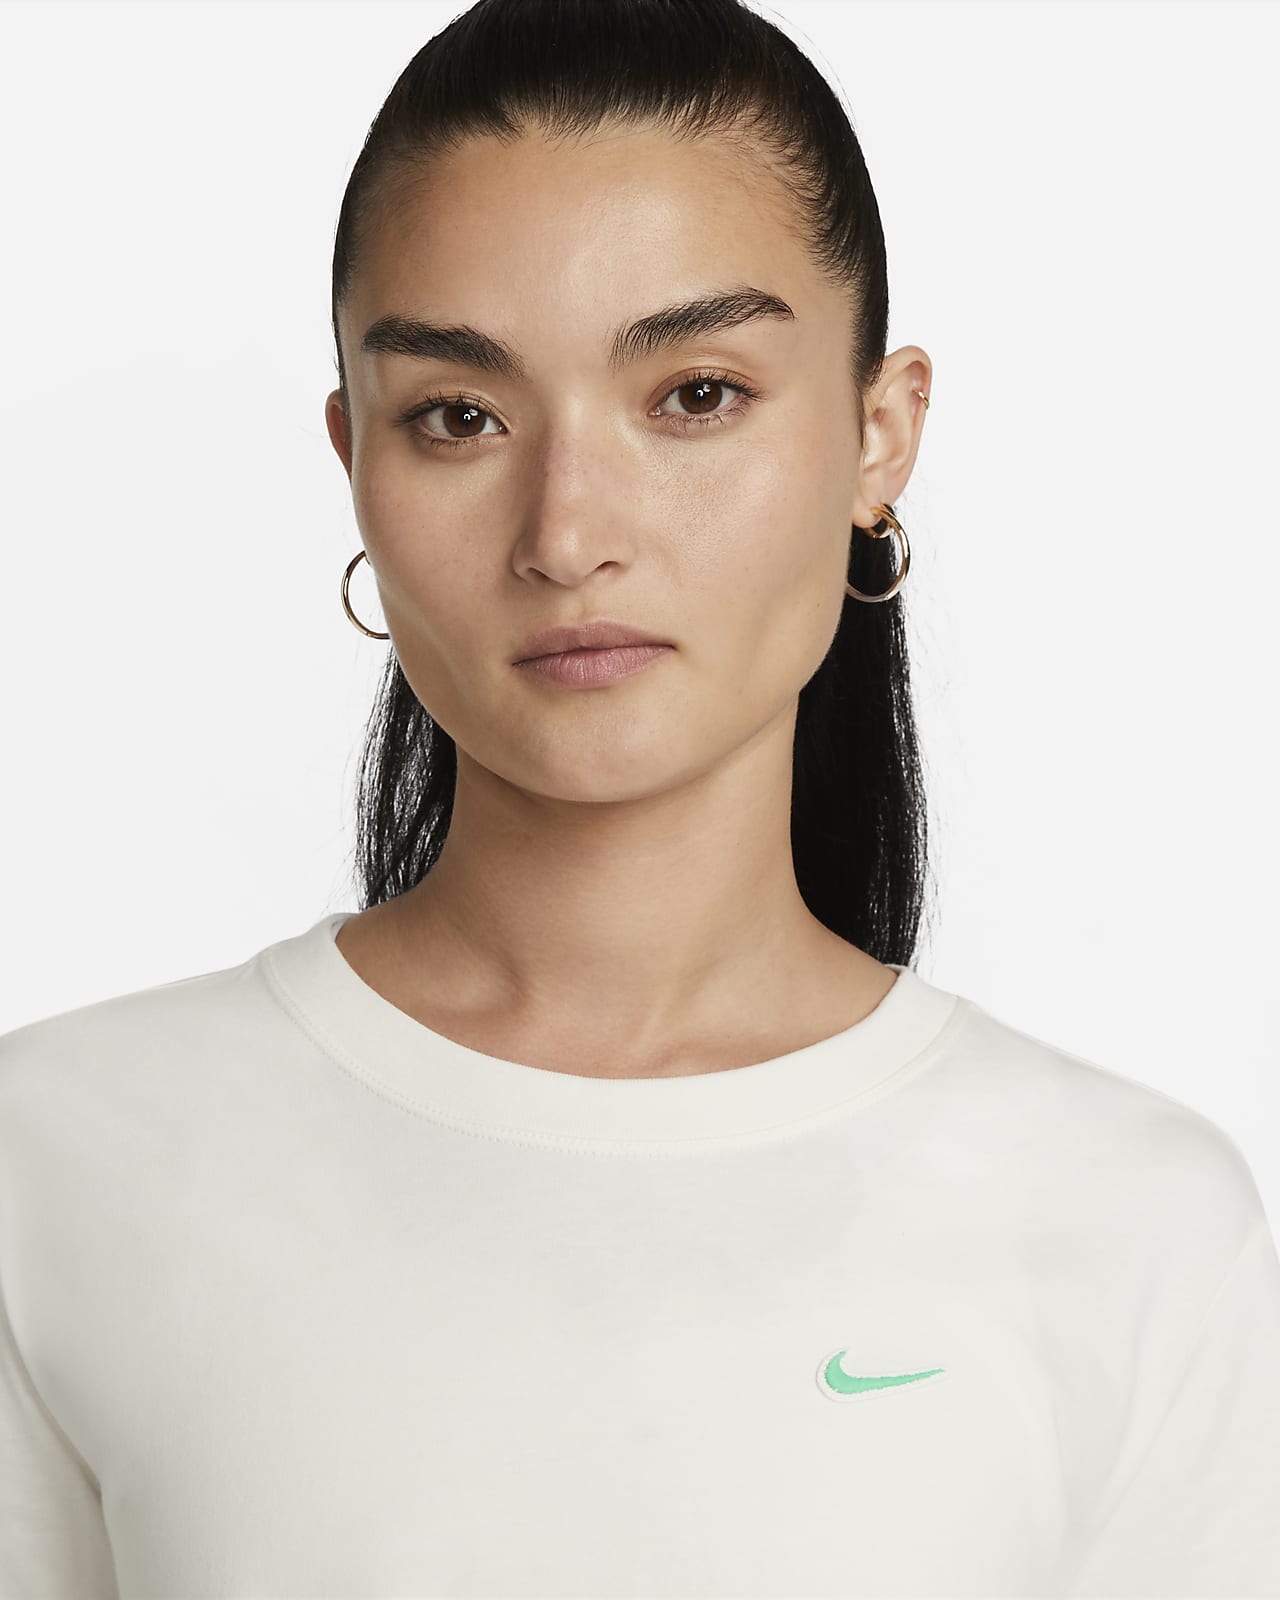 Nike Sportswear Women's Short-Sleeve Crop Top. Nike VN